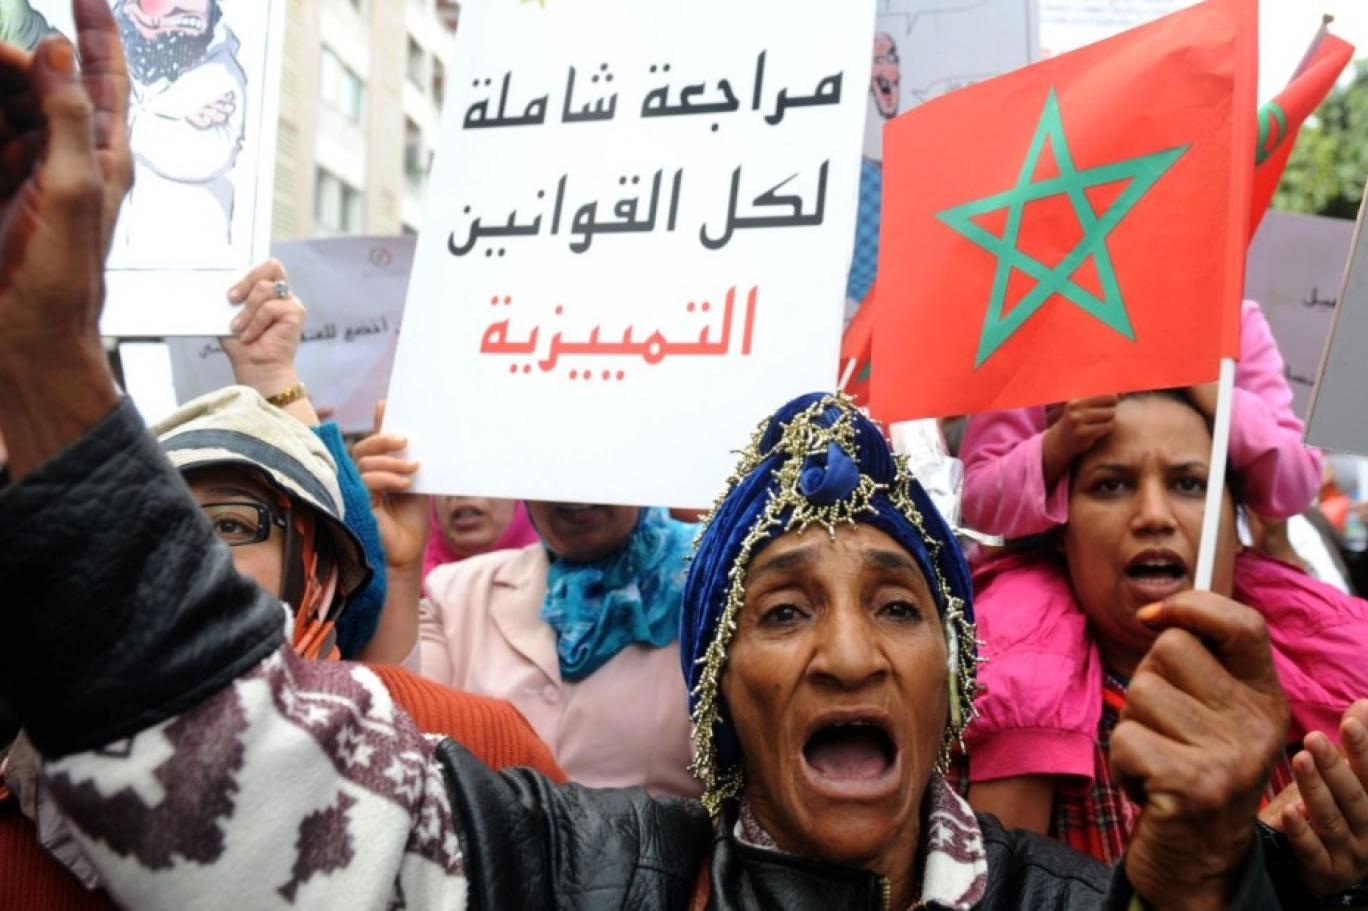 نساء مغربيات يتظاهرن لتغيير القوانين والتشريعات - إنترنت